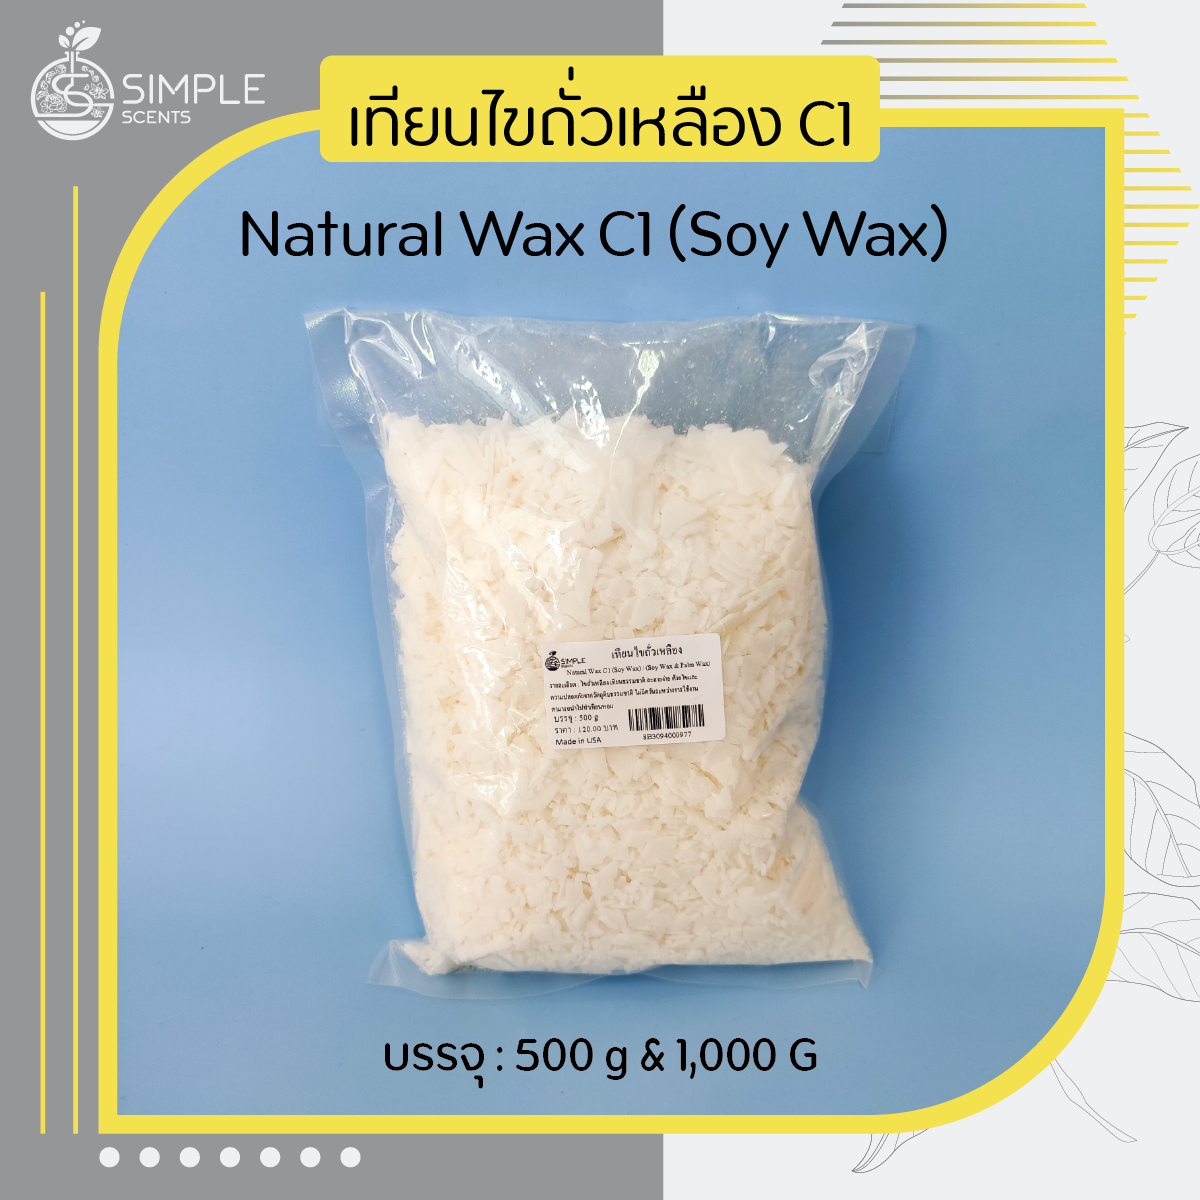 Natural Wax C1 (Soy Wax) / เทียนไขถั่วเหลือง / 500 g & 1,000 g